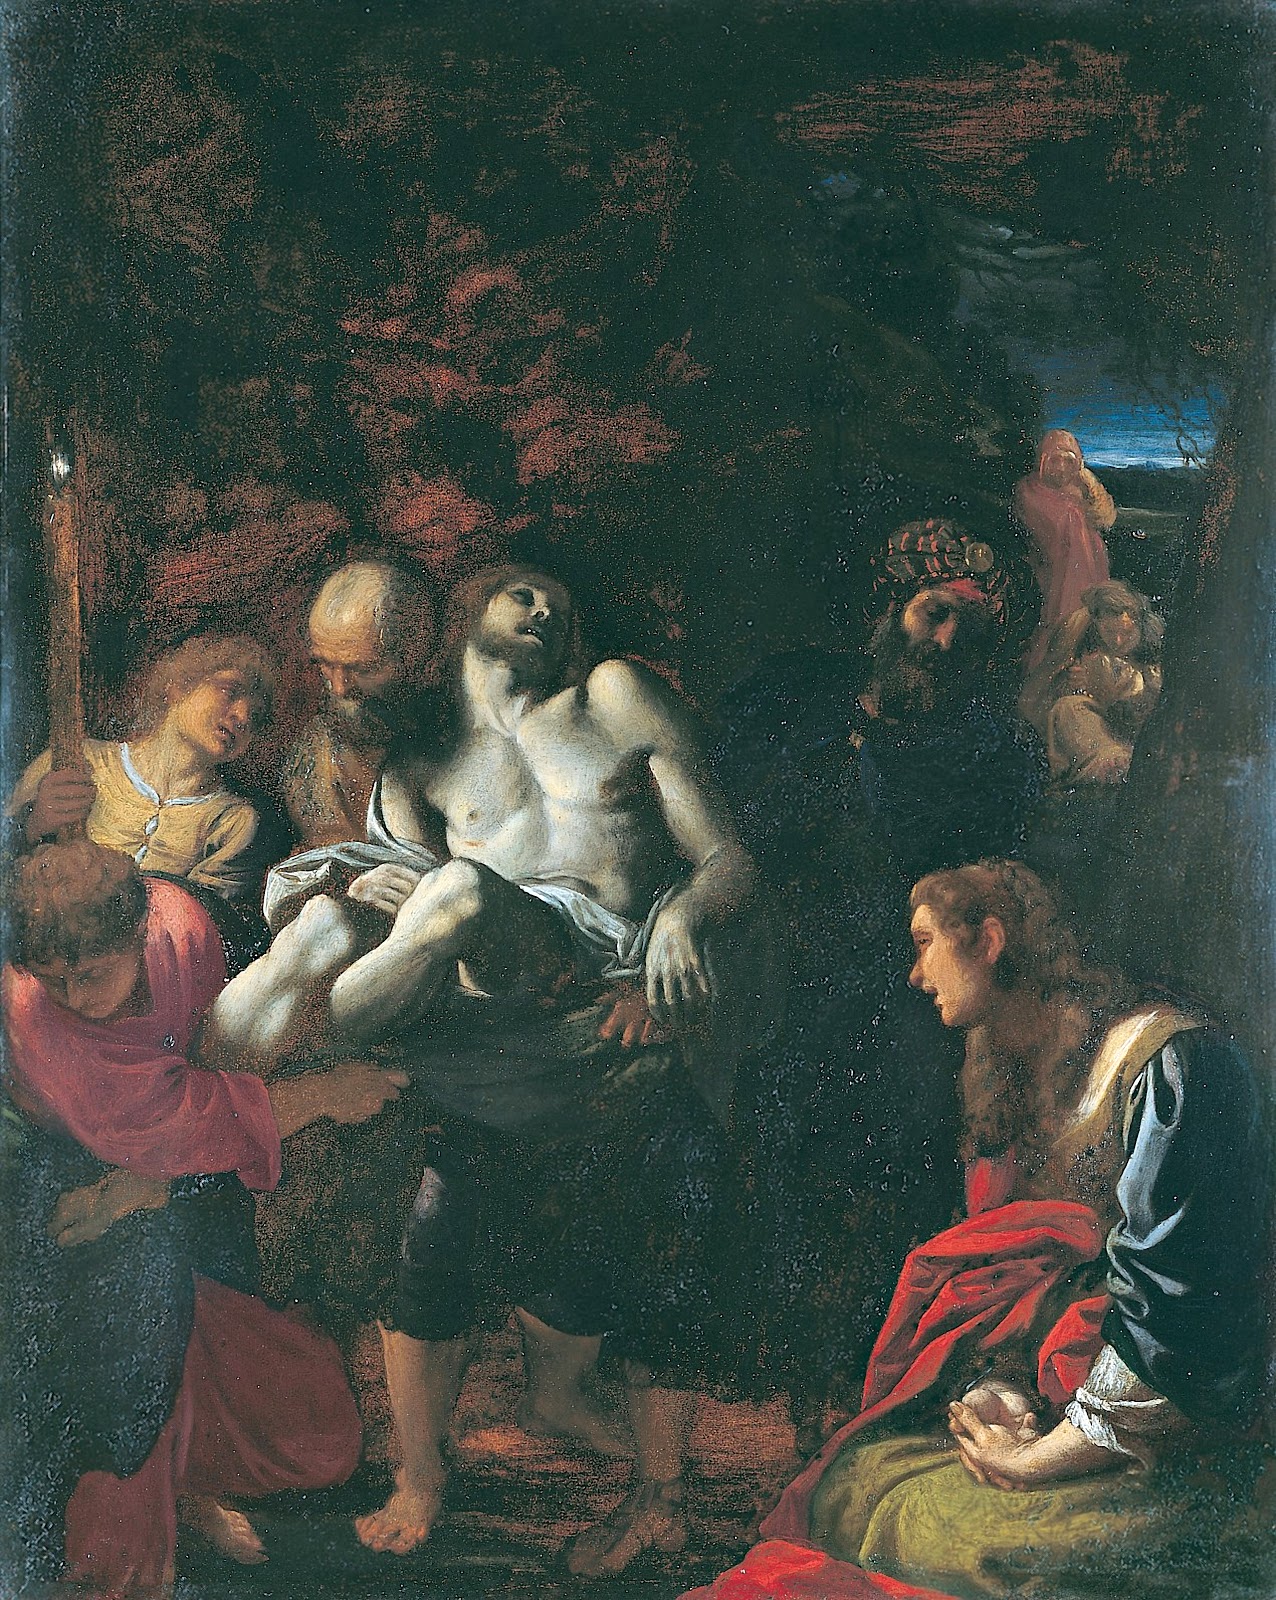 Annibale+Carracci-1560-1609 (54).jpg